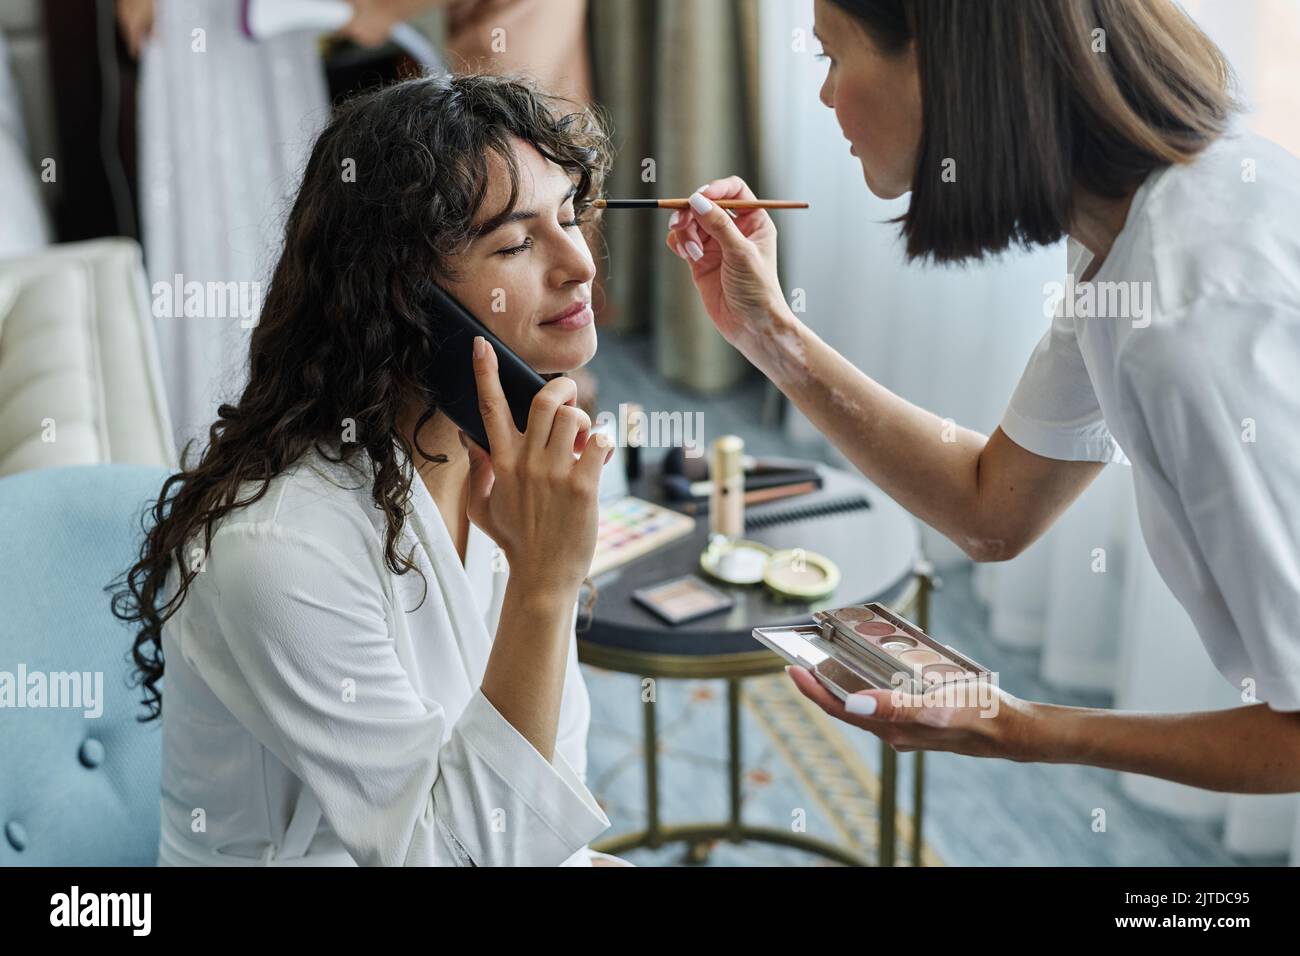 Junge lächelnde Brünette Frau im weißen Bademantel im Gespräch auf dem Handy, während Make-up-Künstler Lidschatten auf ihre Augen Stockfoto